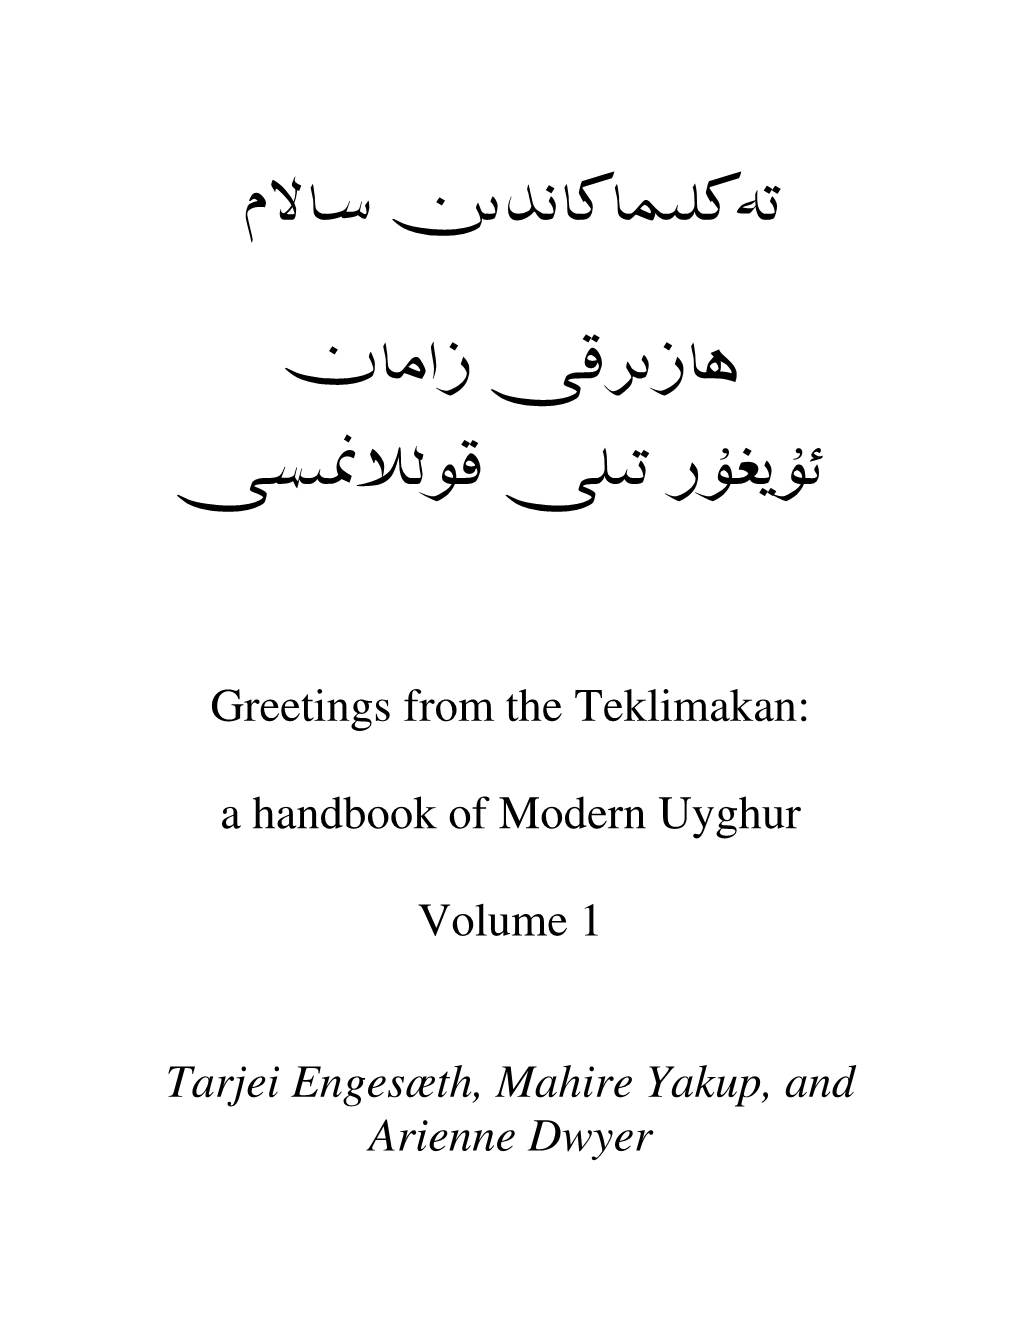 A Handbook of Modern Uyghur